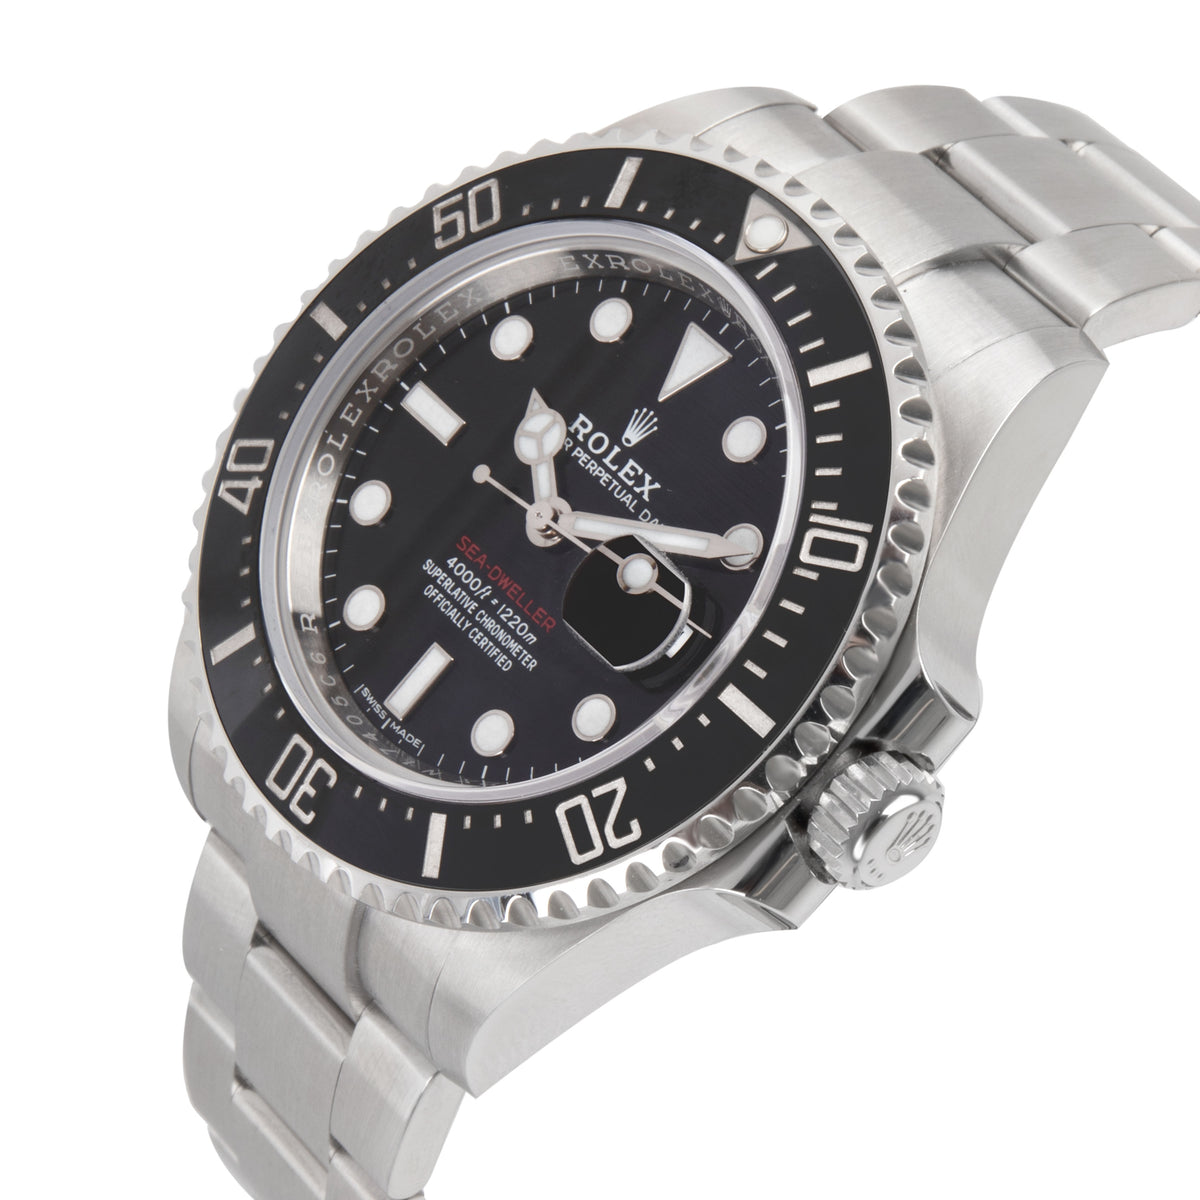 Rolex Sea-Dweller 126600 Men's Watch in  Stainless Steel